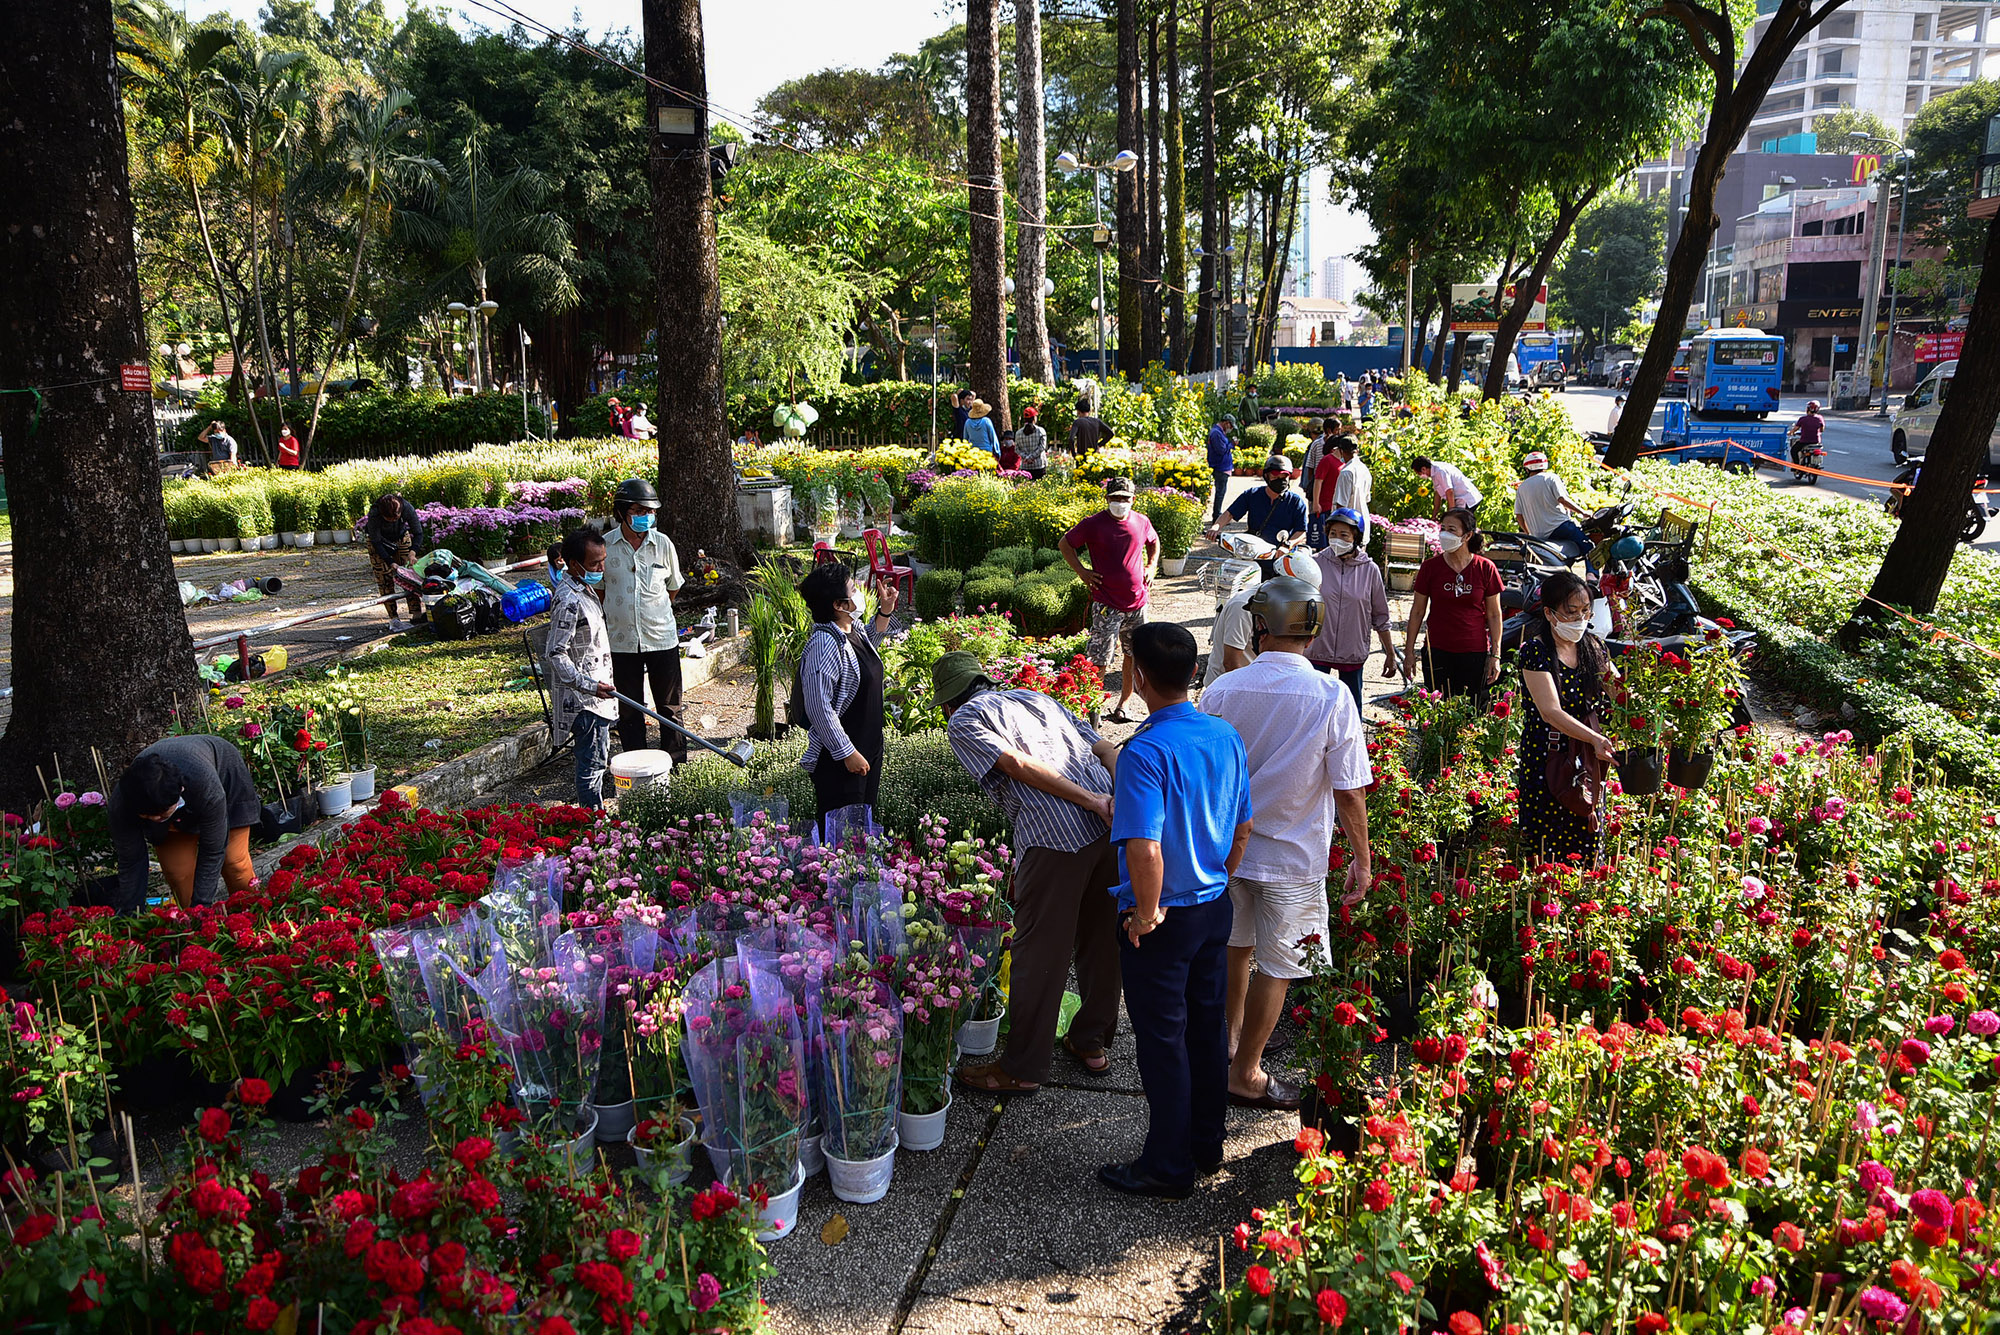 Sáng 31/1 (29 Tết), không khí mua hoa kiểng náo nhiệt hơn ở các chợ hoa Tết so với những ngày trước đó, nhất là tại các chợ hoa mở trong công viên.